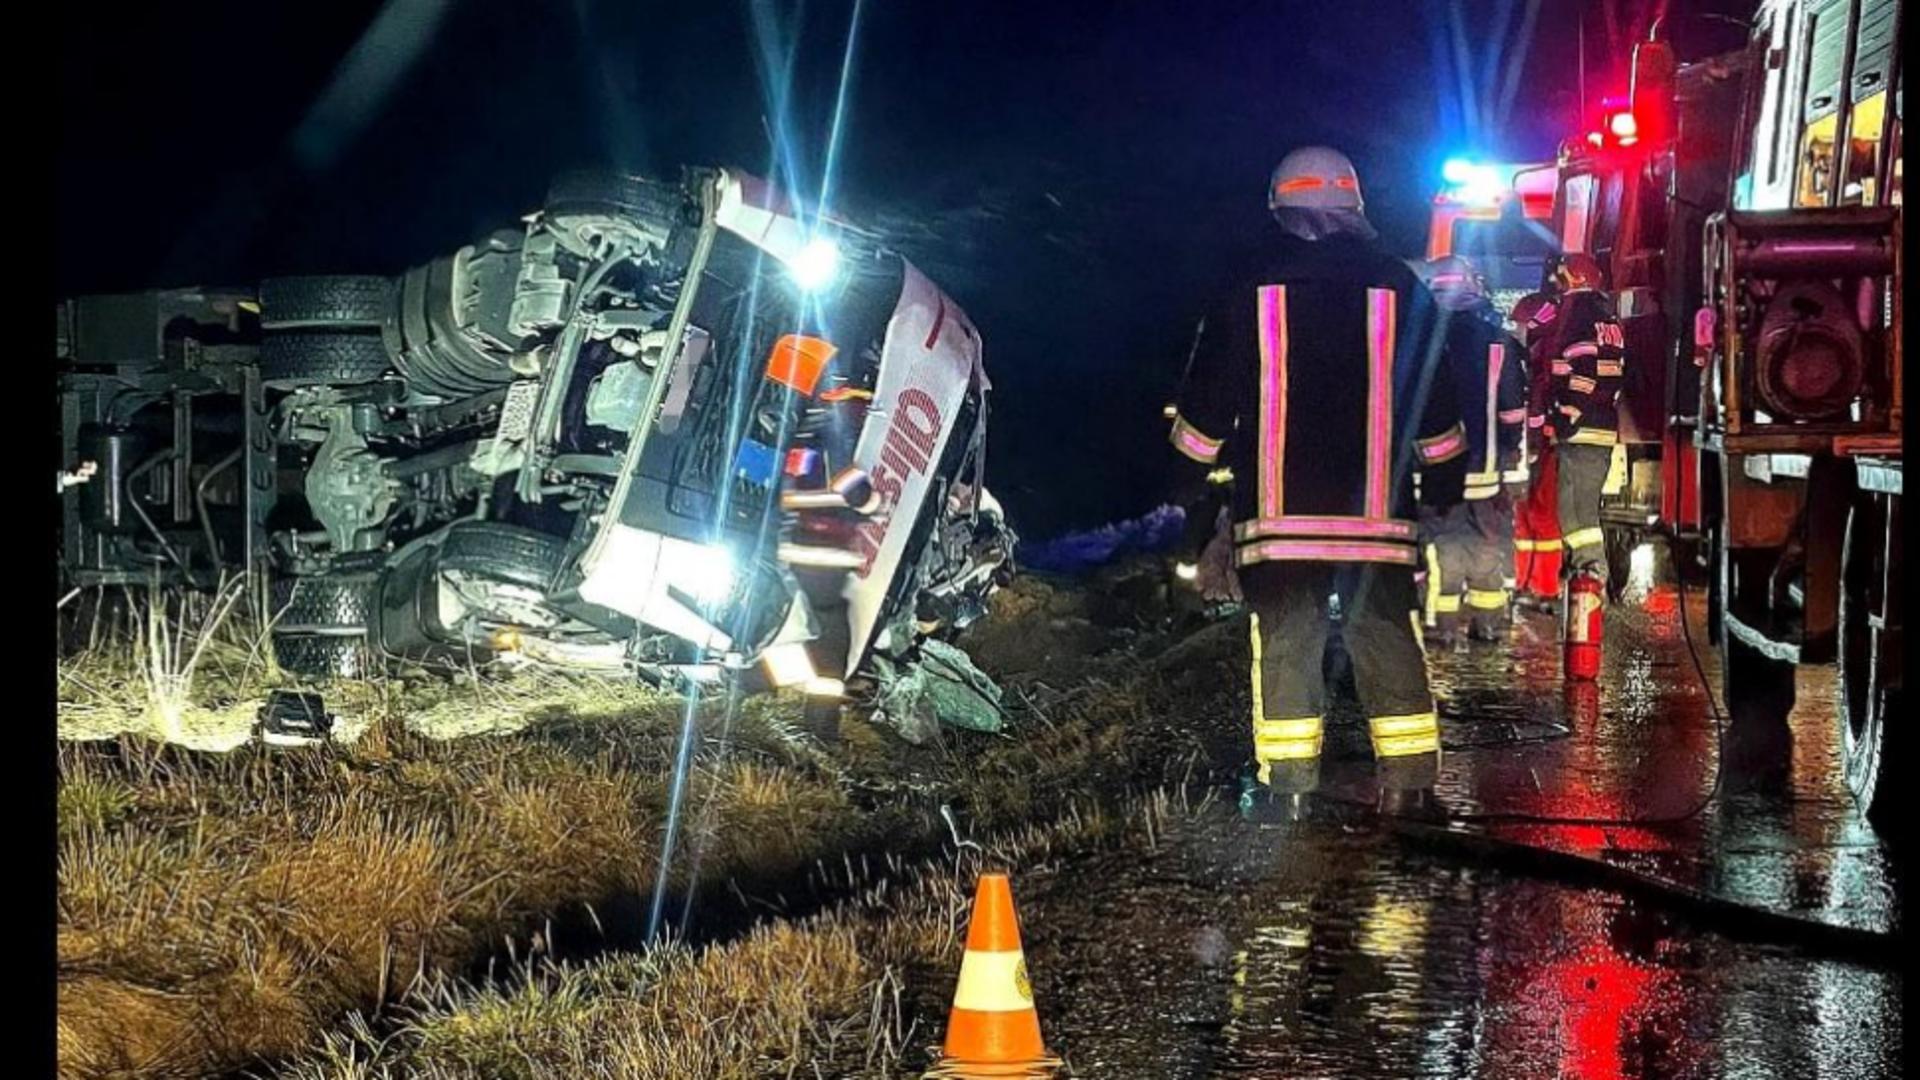 Sfârșit tragic pentru un șofer de TIR din Turcia. A murit strivit în cabina camionului pe care îl conducea